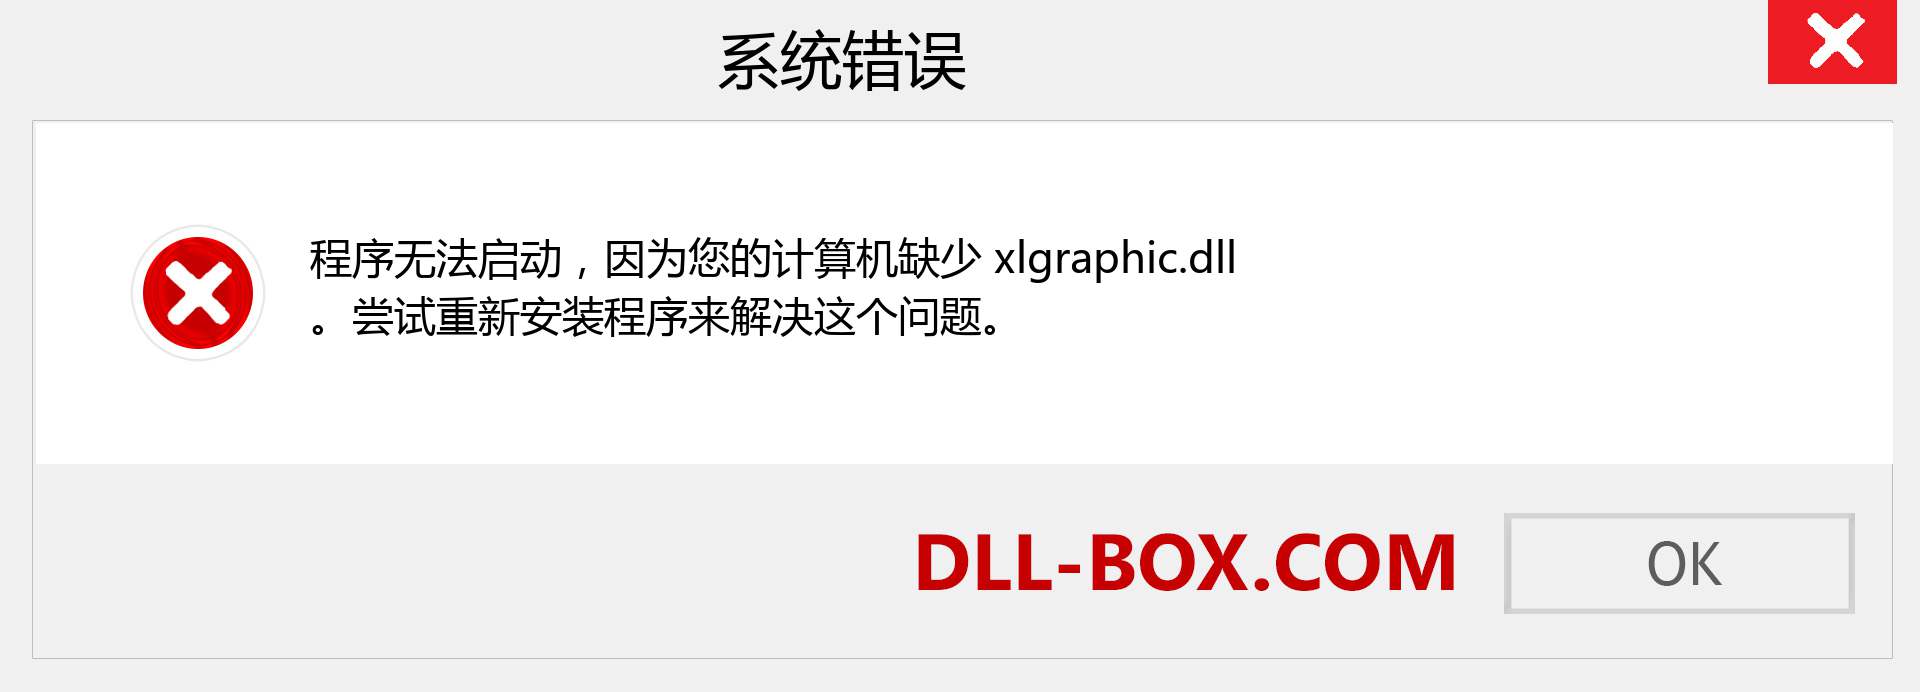 xlgraphic.dll 文件丢失？。 适用于 Windows 7、8、10 的下载 - 修复 Windows、照片、图像上的 xlgraphic dll 丢失错误